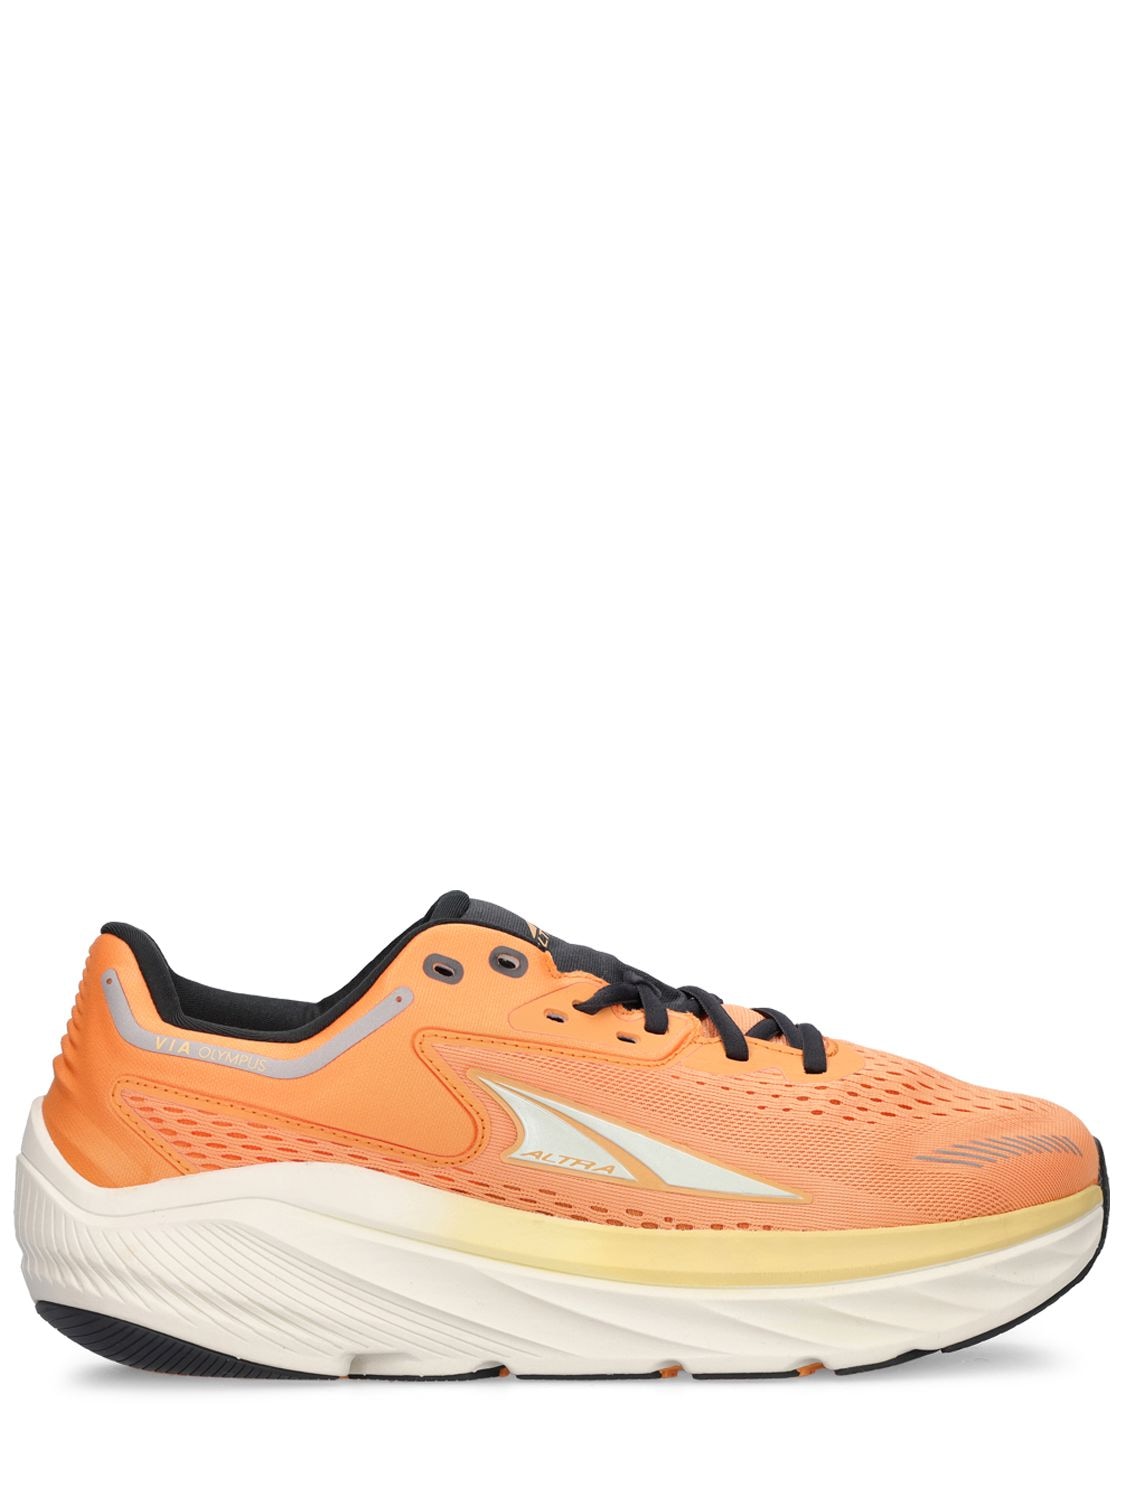 Altra Running Via Olympus Road Running Sneakers In Orange